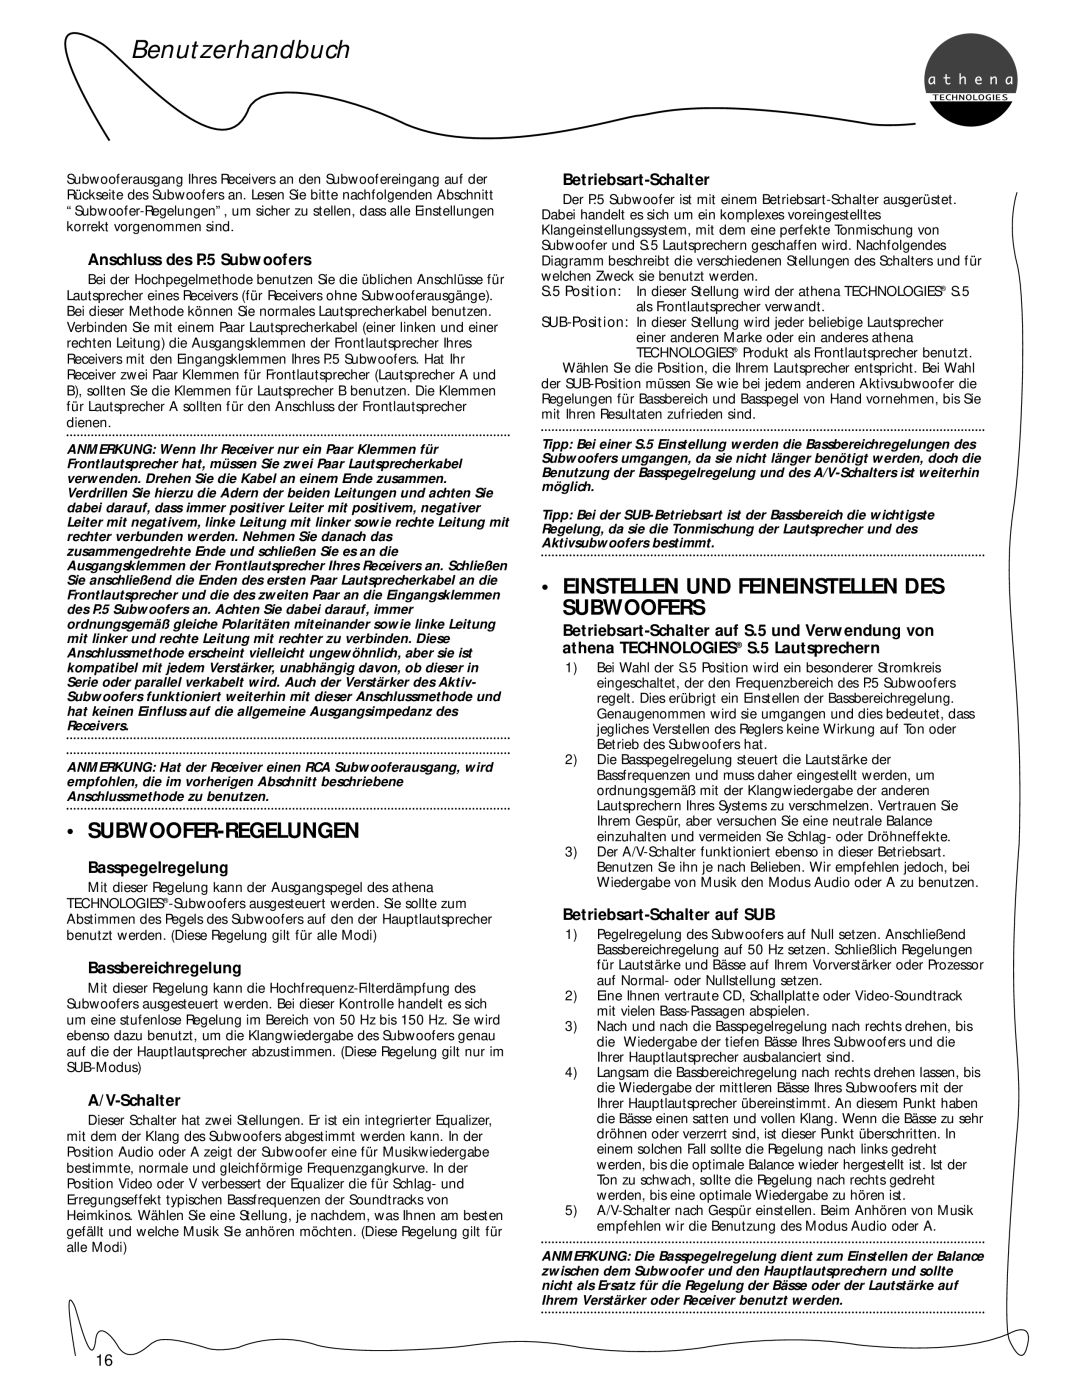 Athena Technologies C.5 Subwoofer-Regelungen, Einstellen Und Feineinstellen Des Subwoofers, Benutzerhandbuch, A/V-Schalter 